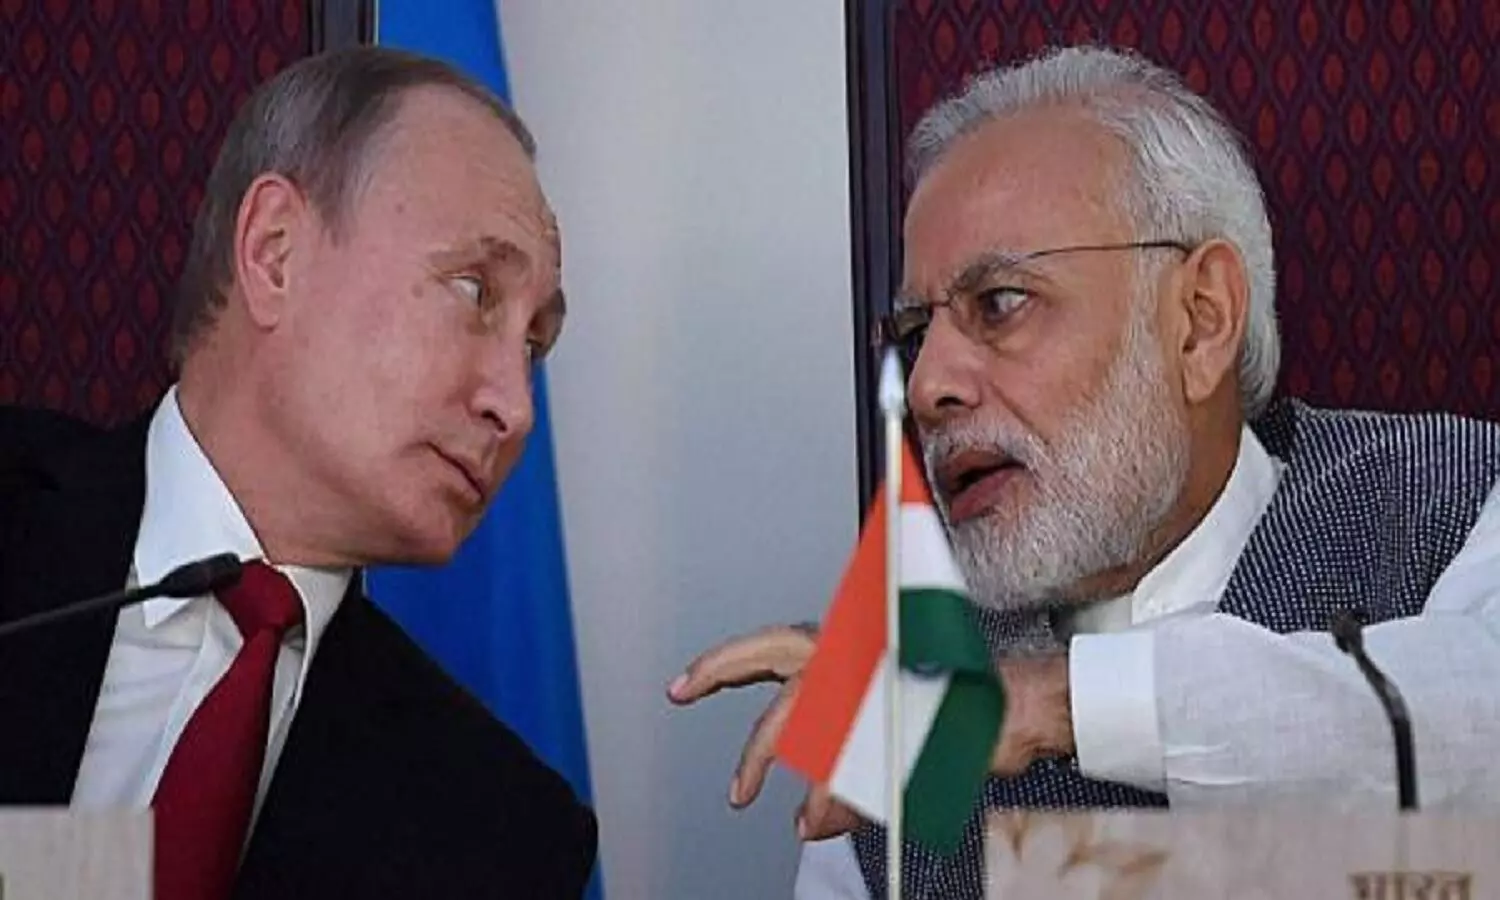 भारत रूस मित्रता का फायदा: रूस ने तेल और गैस क्षेत्रों में भारत के सामने रखी निवेश की पेशकश, यह बड़ा अवसर है